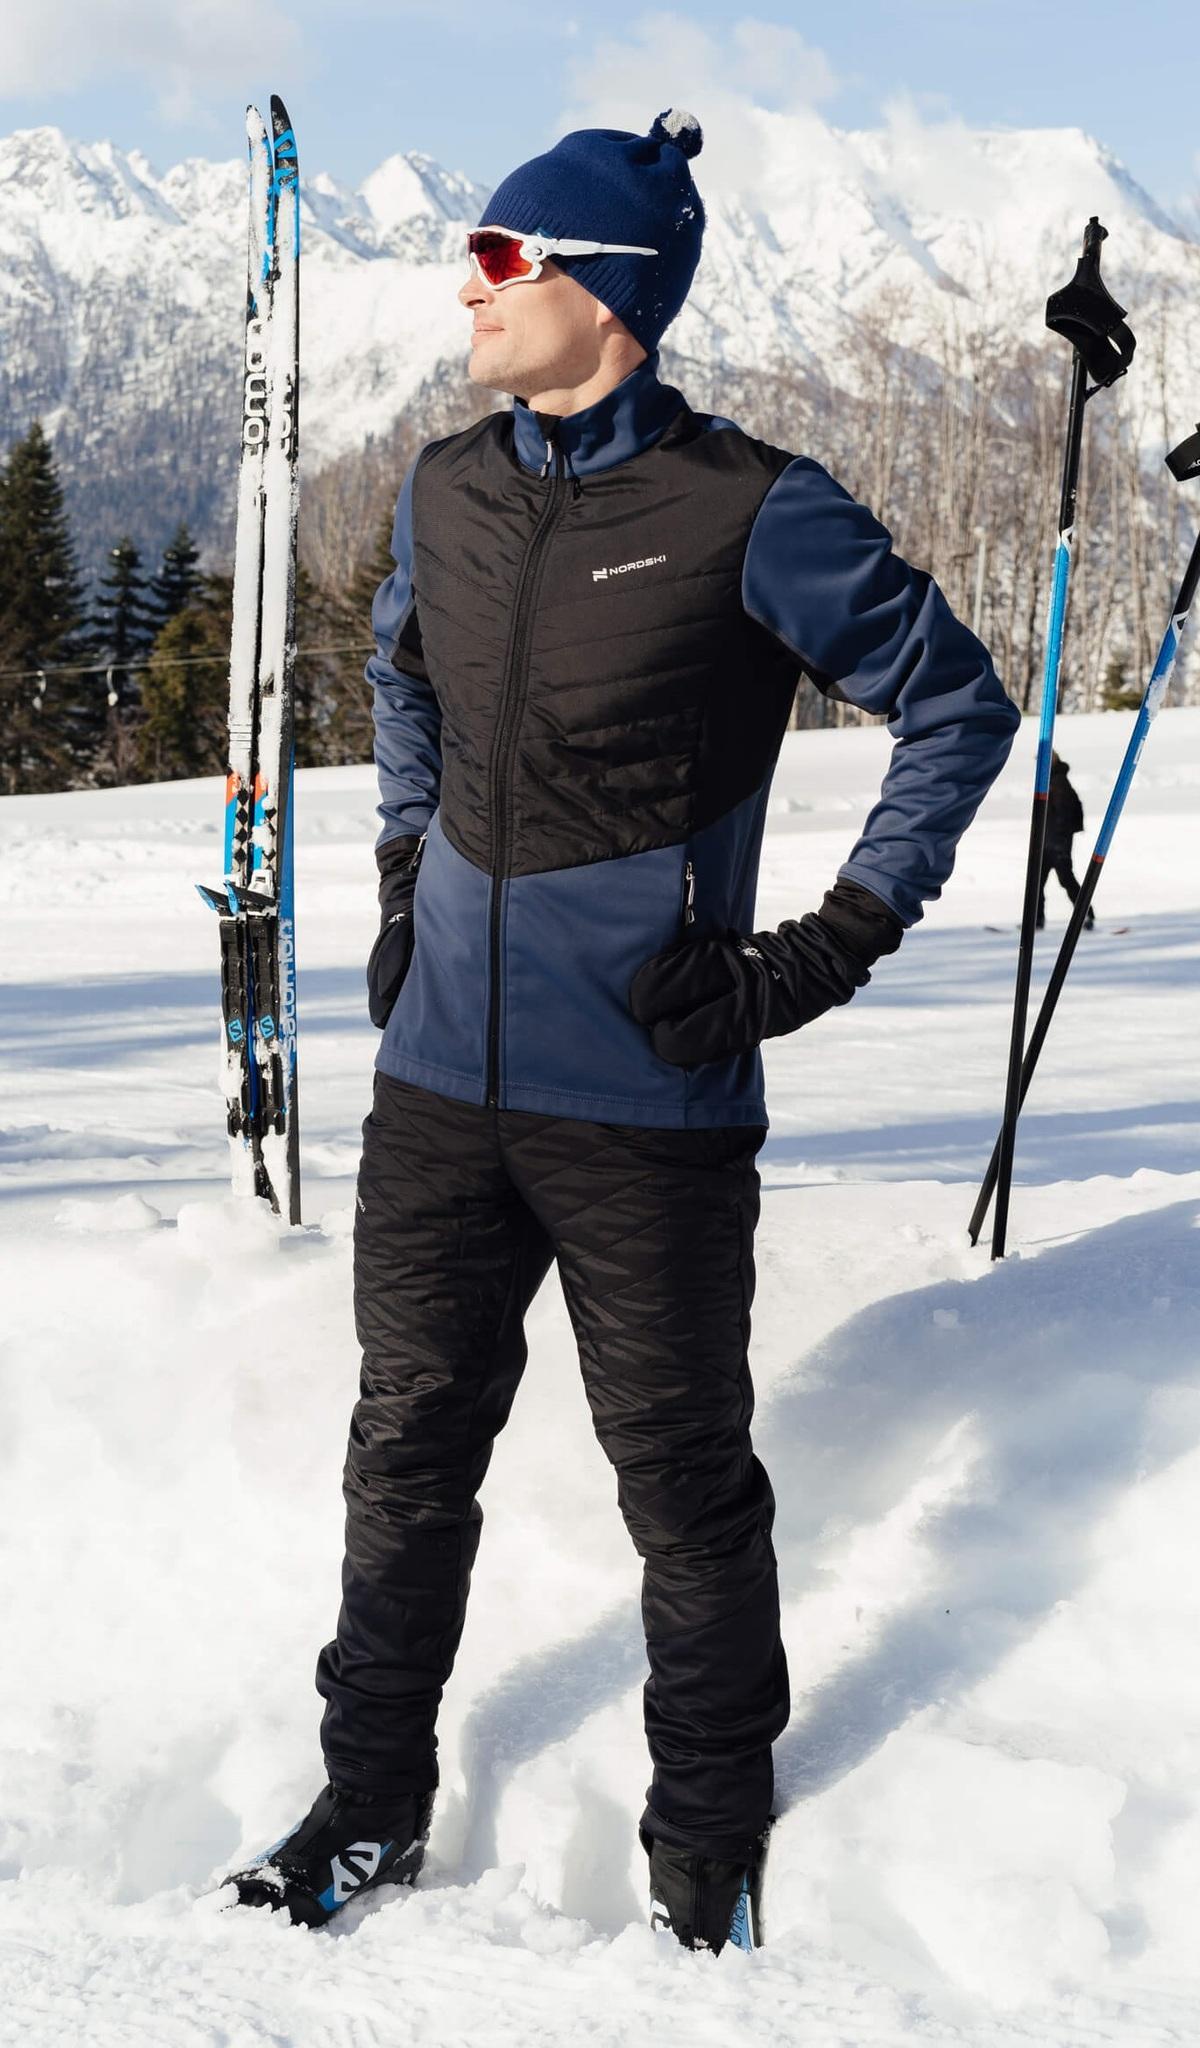 Коньки или лыжи: врач рассказал, какой зимний вид спорта полезней - KP.RU